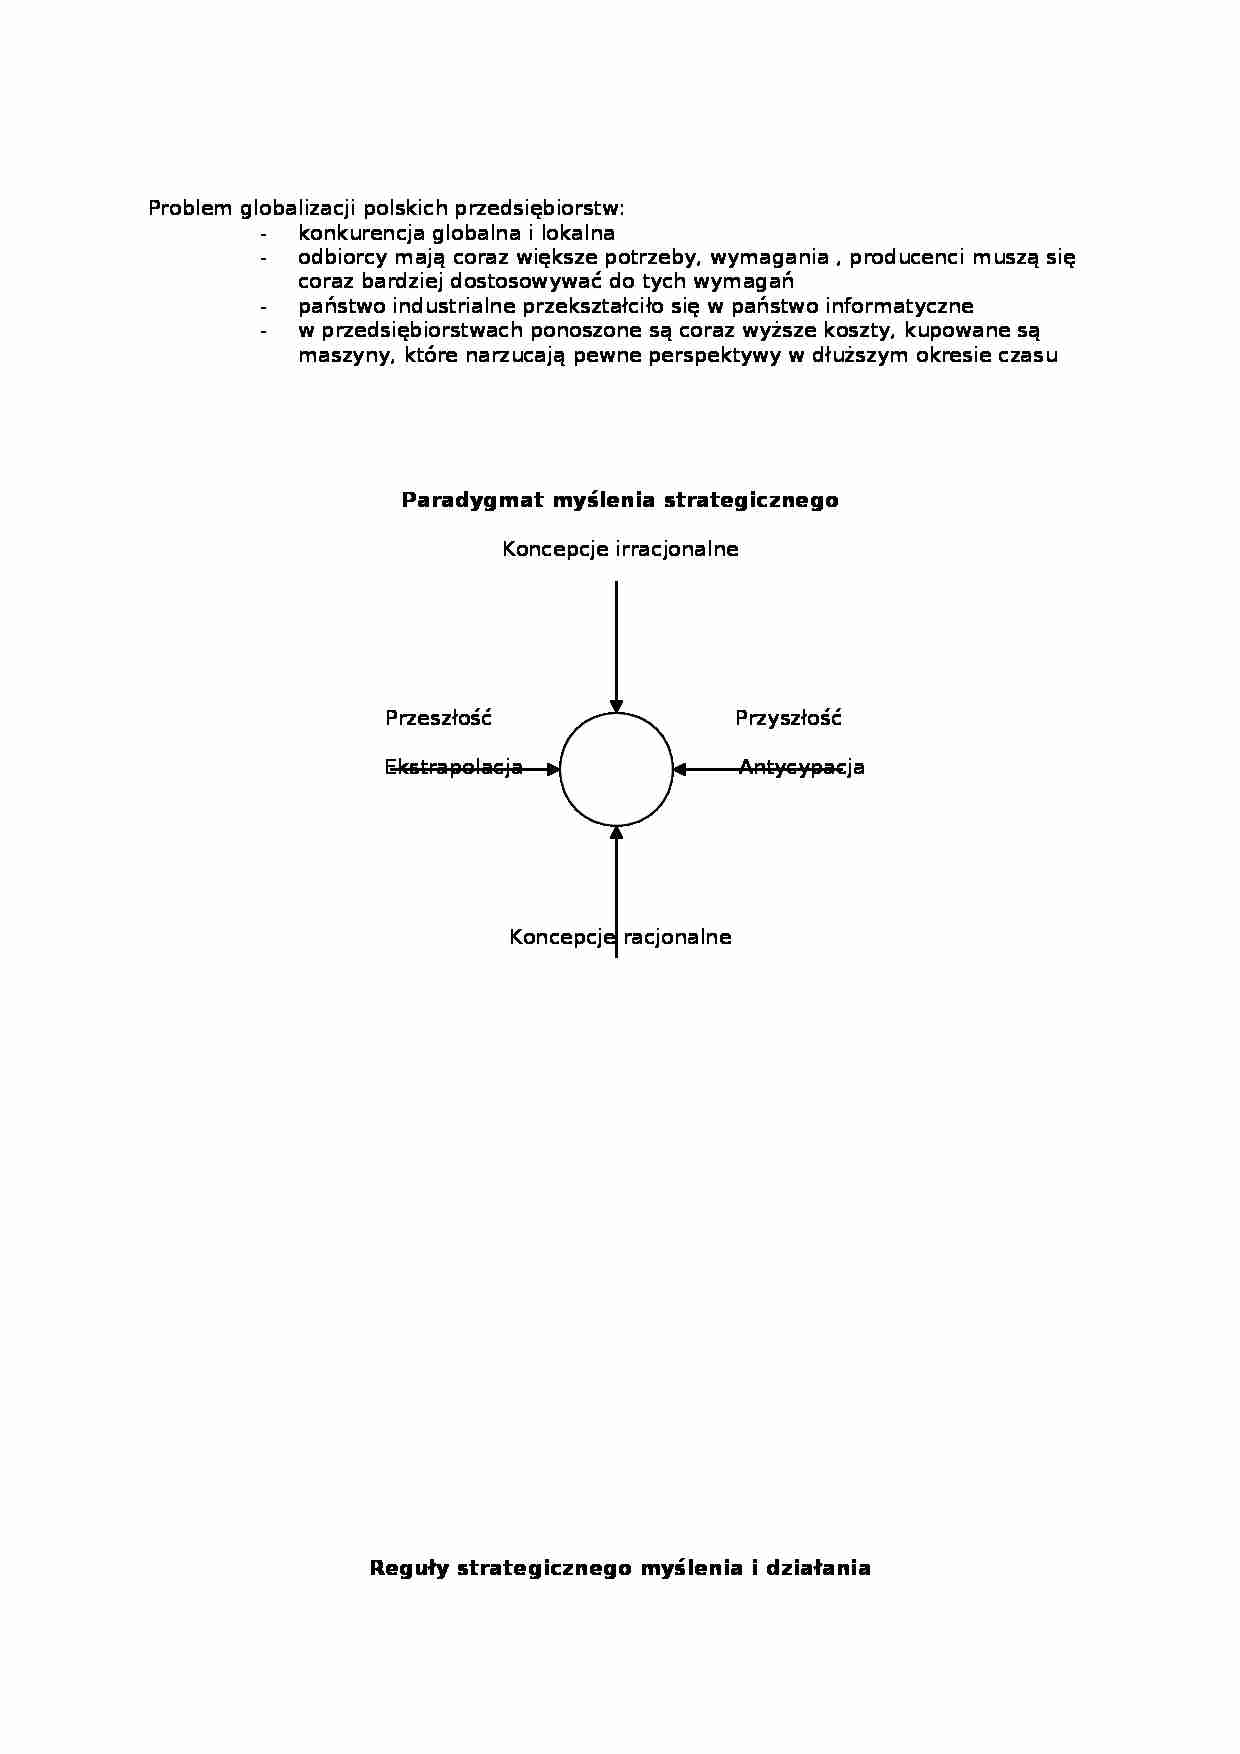 zarządzanie strategiczne - wykłady - strona 1